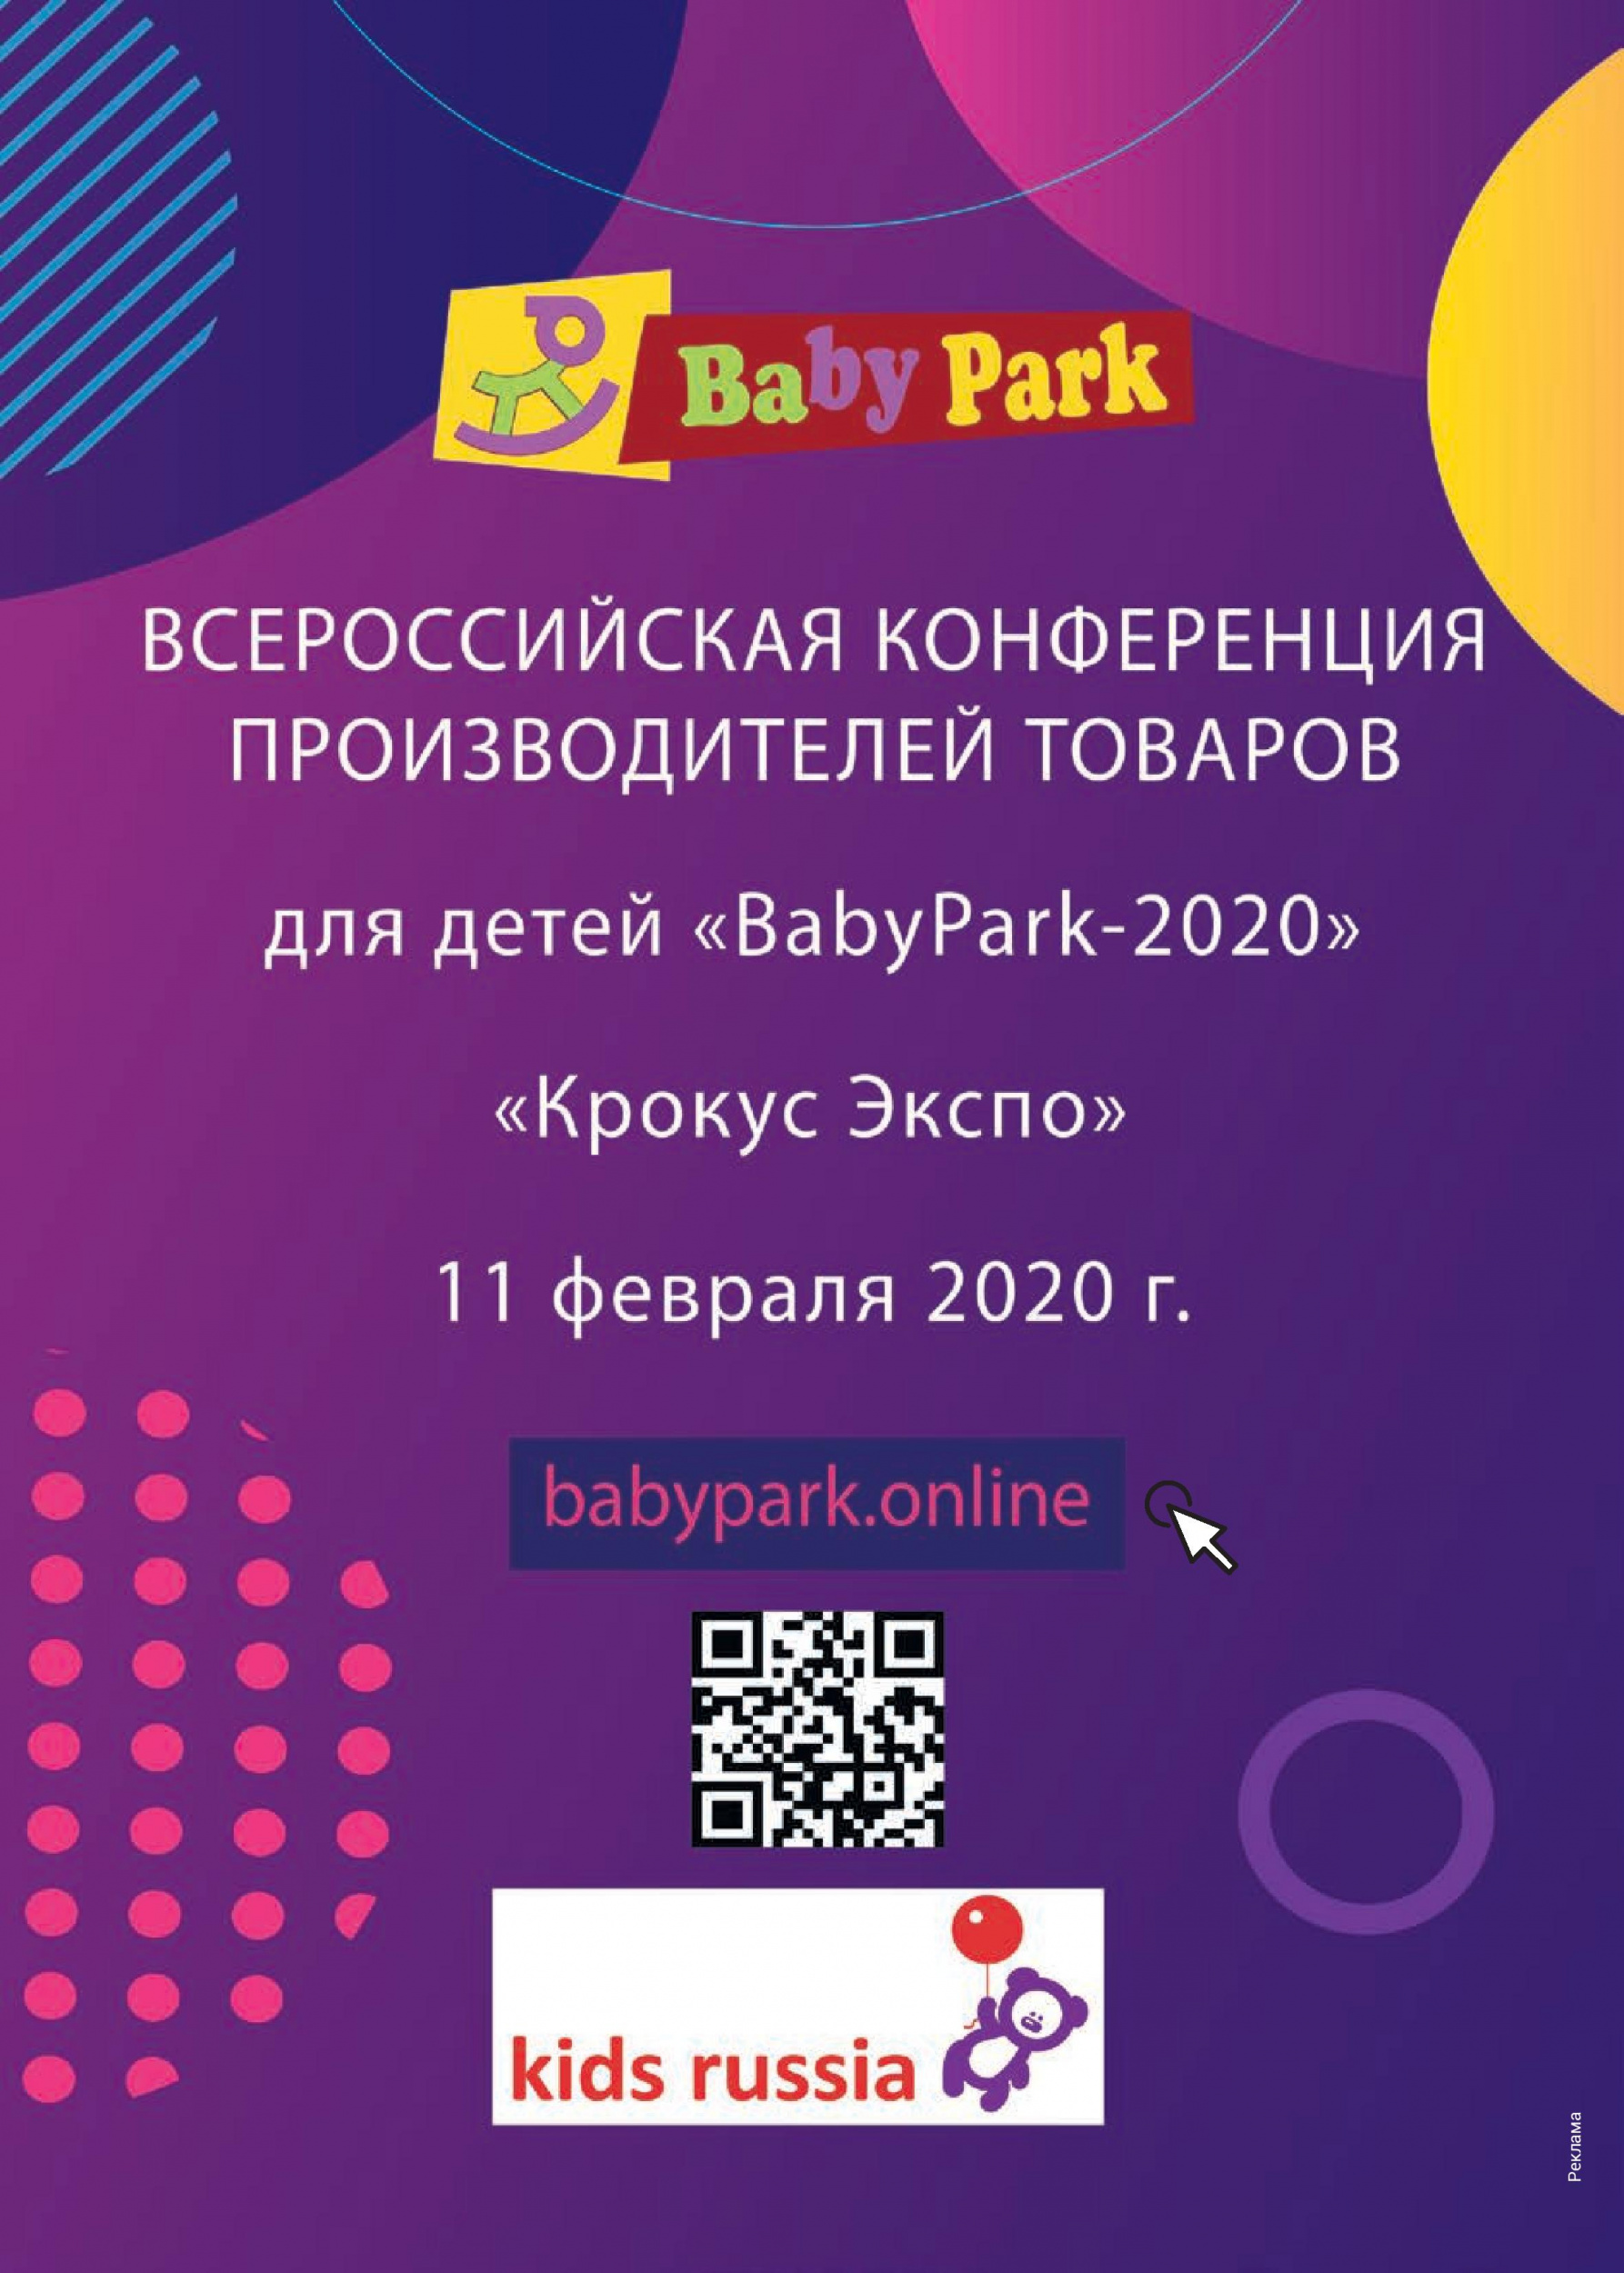 Всероссийская конференция BabyPark-2020